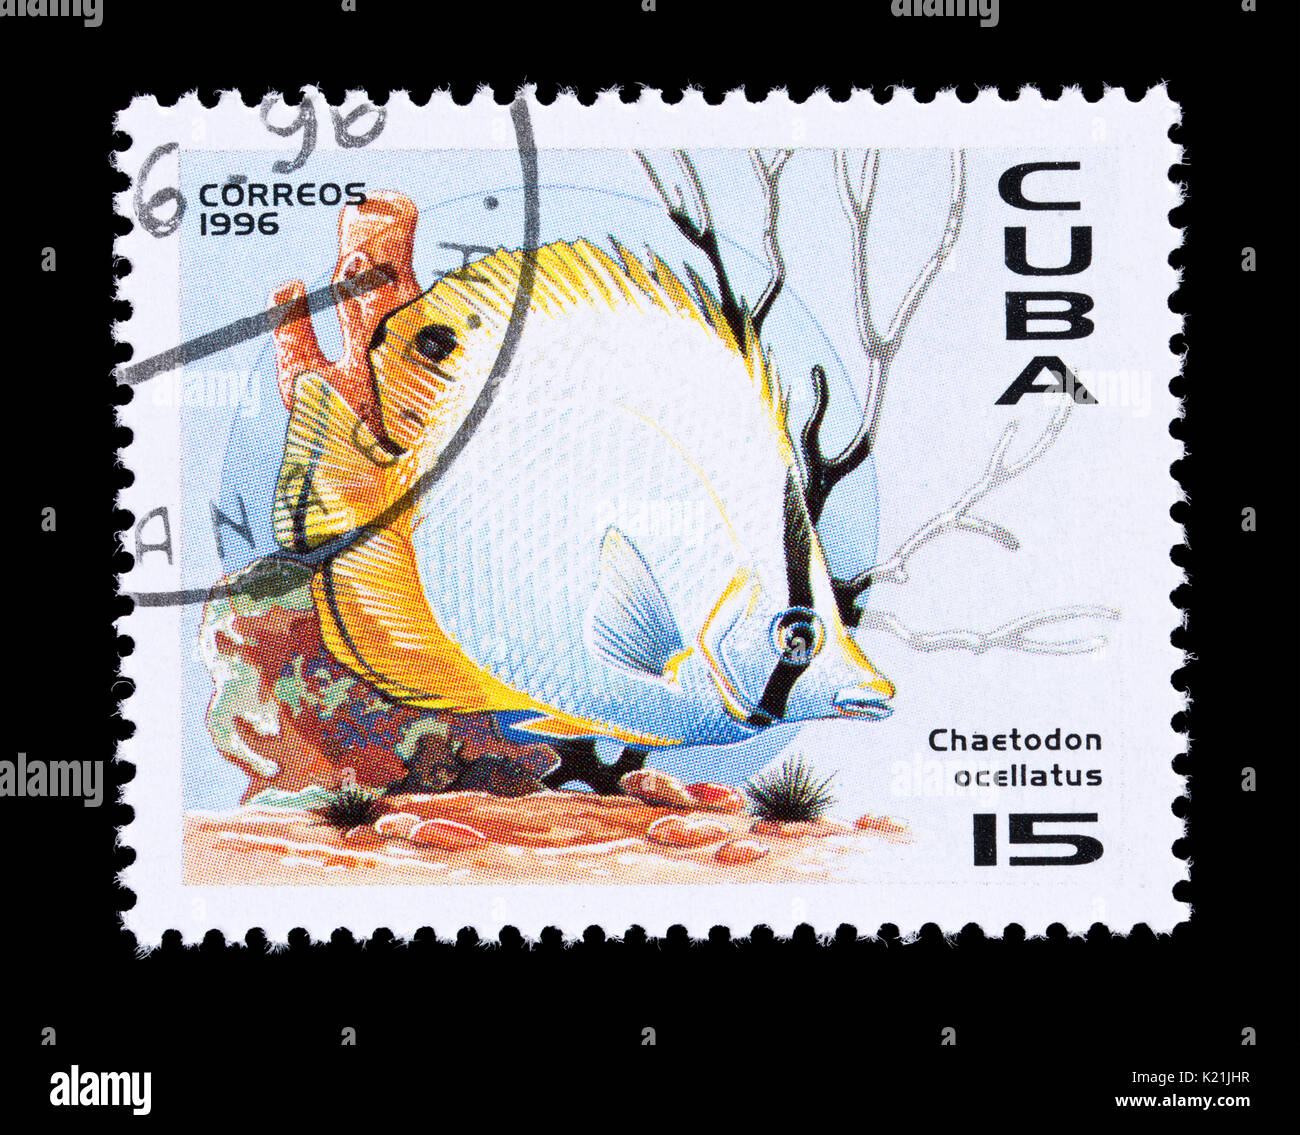 Timbre-poste de Cuba représentant un méné bleu médiocre (Chaetodon ocellatus) Banque D'Images